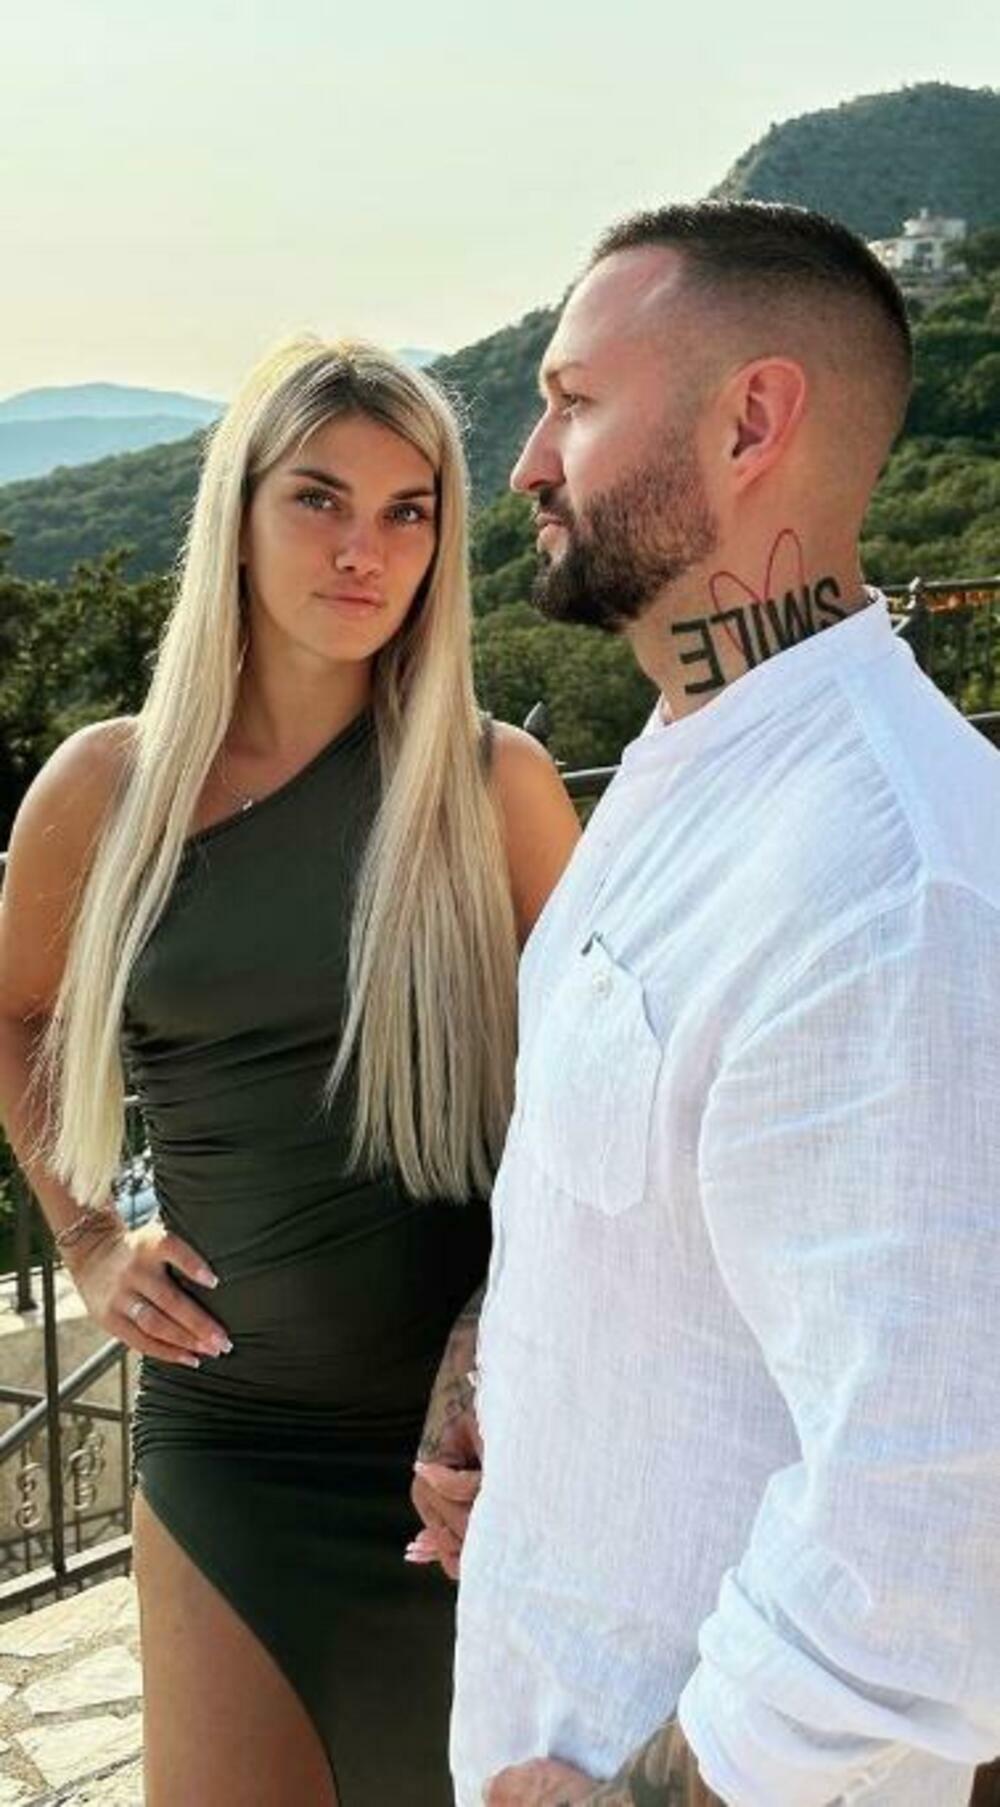 Nenad Aleksić Ša otkrio je javnosti da se razvodi od tiktokerke Vanje Aleksić, koju je oženio 20. jula ove godine.